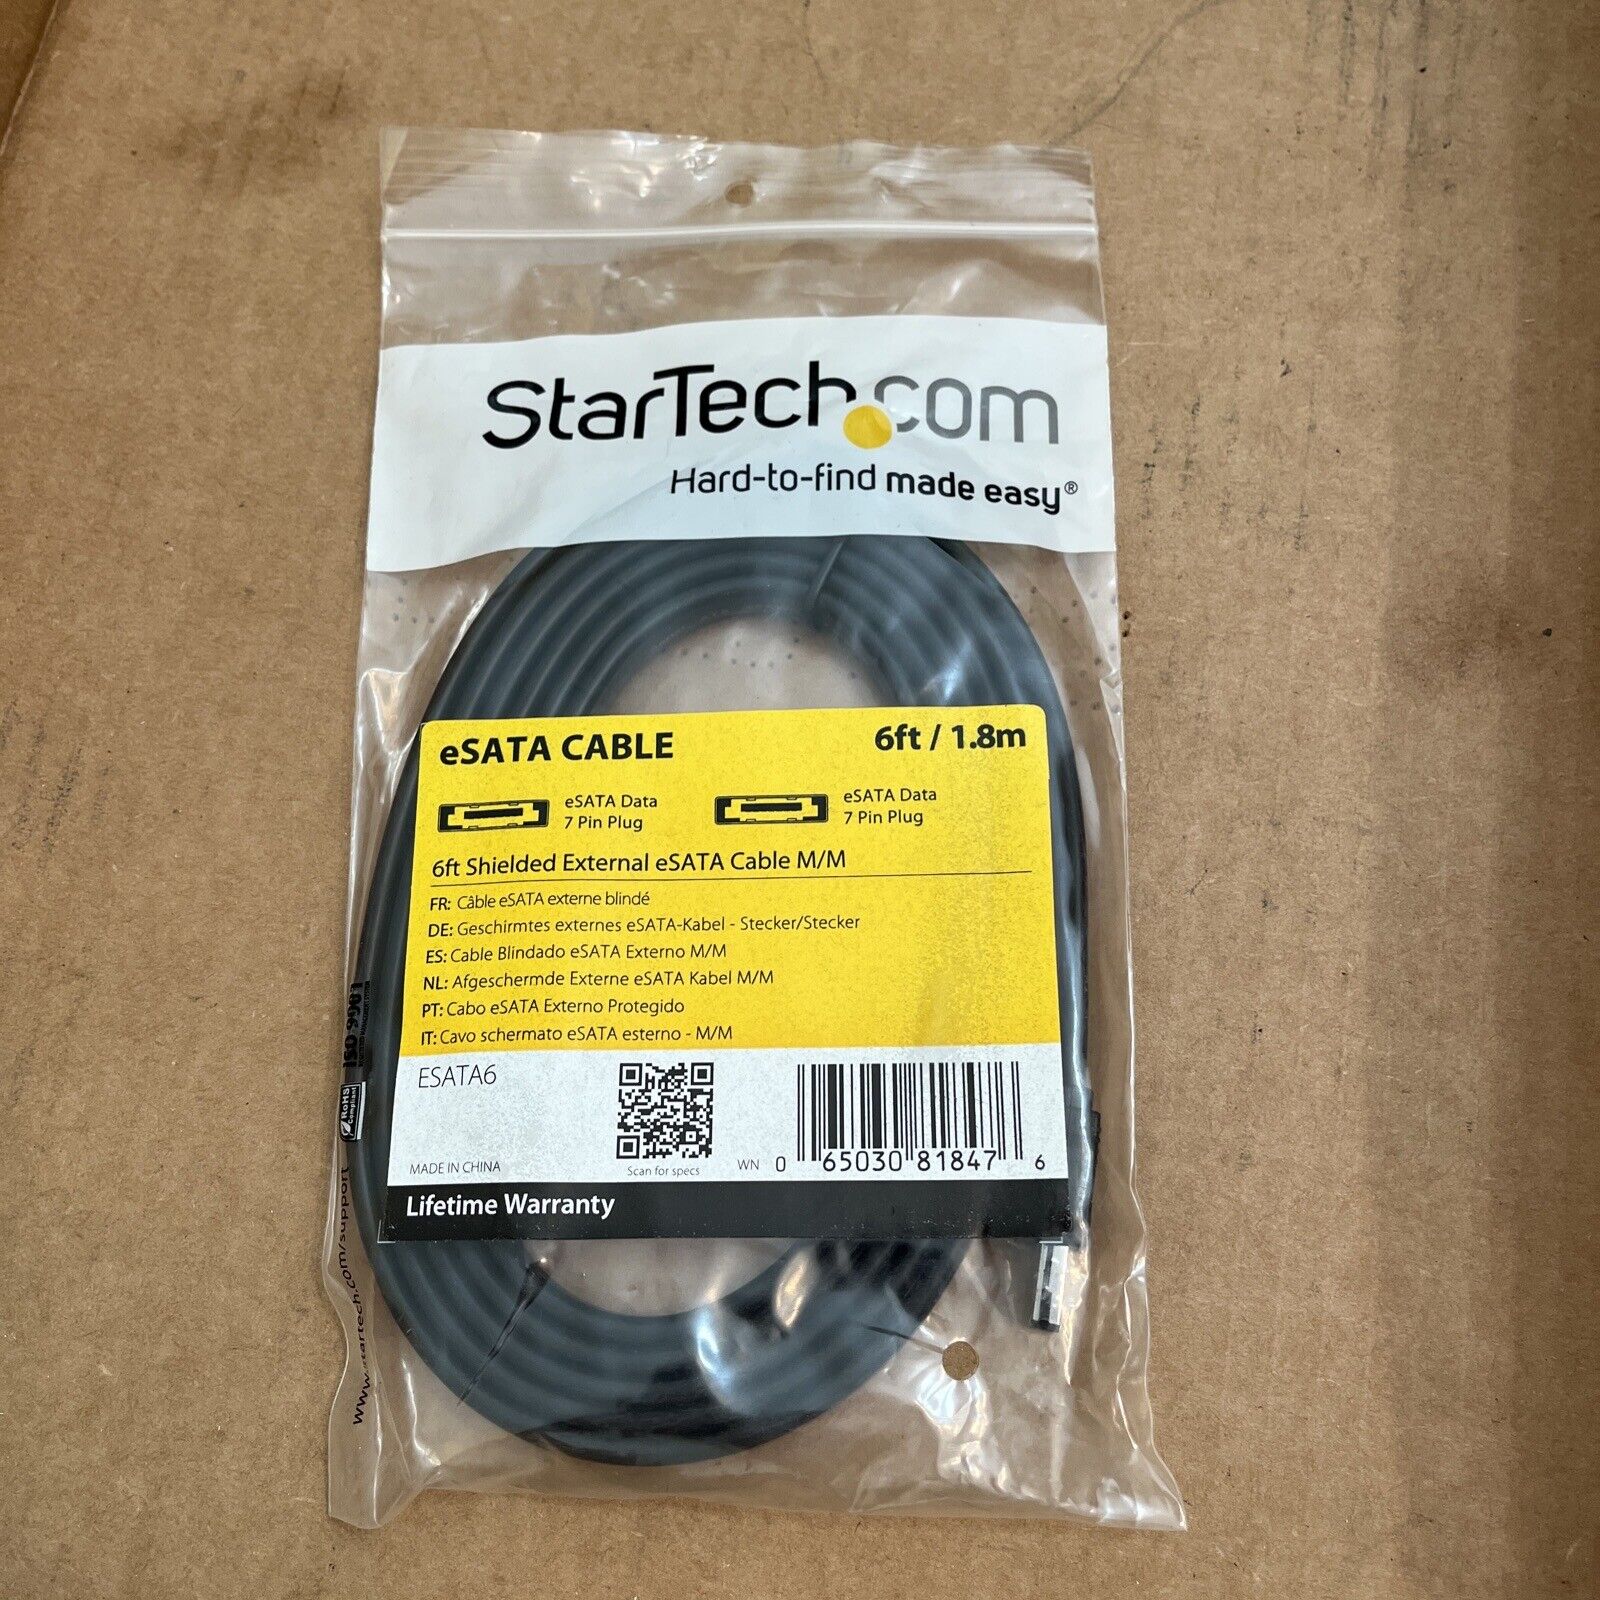 New StarTech.com ESATA6 6 ft '/ 1.8m Shielded External eSATA Cable M/M         